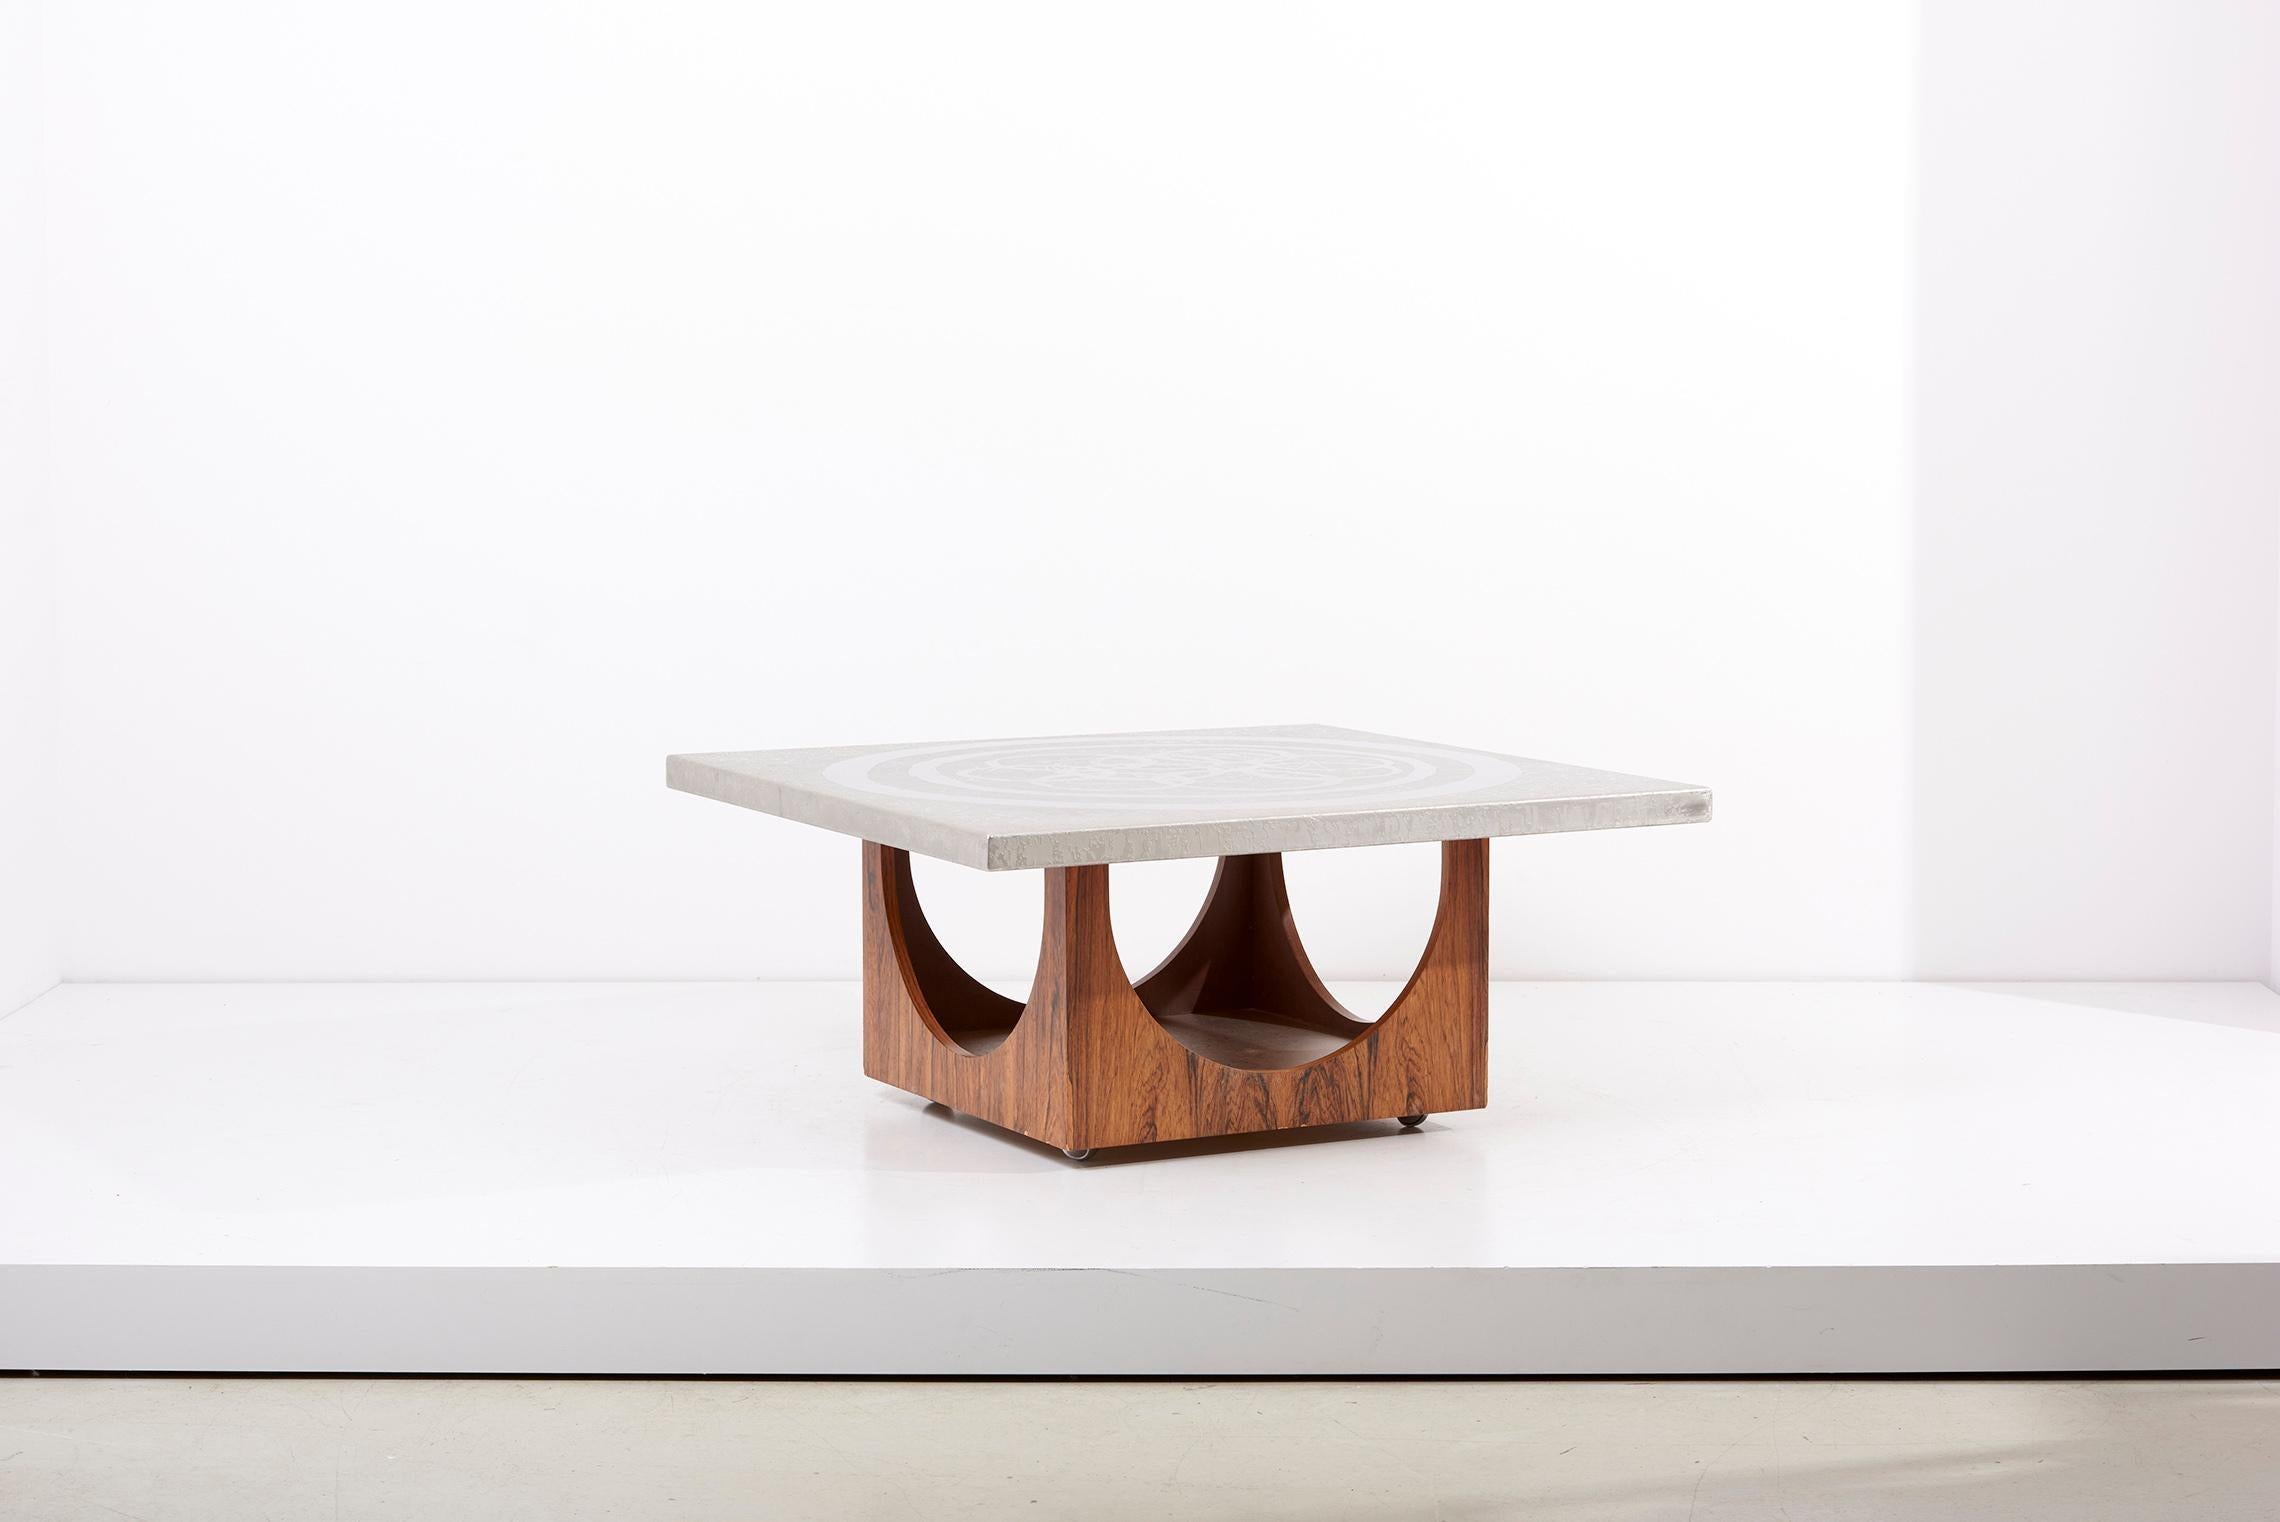 Table basse des années 1970 en aluminium avec base en bois, Allemagne.
Table basse extravertie très décorative avec un plateau et un fond en aluminium bordé.